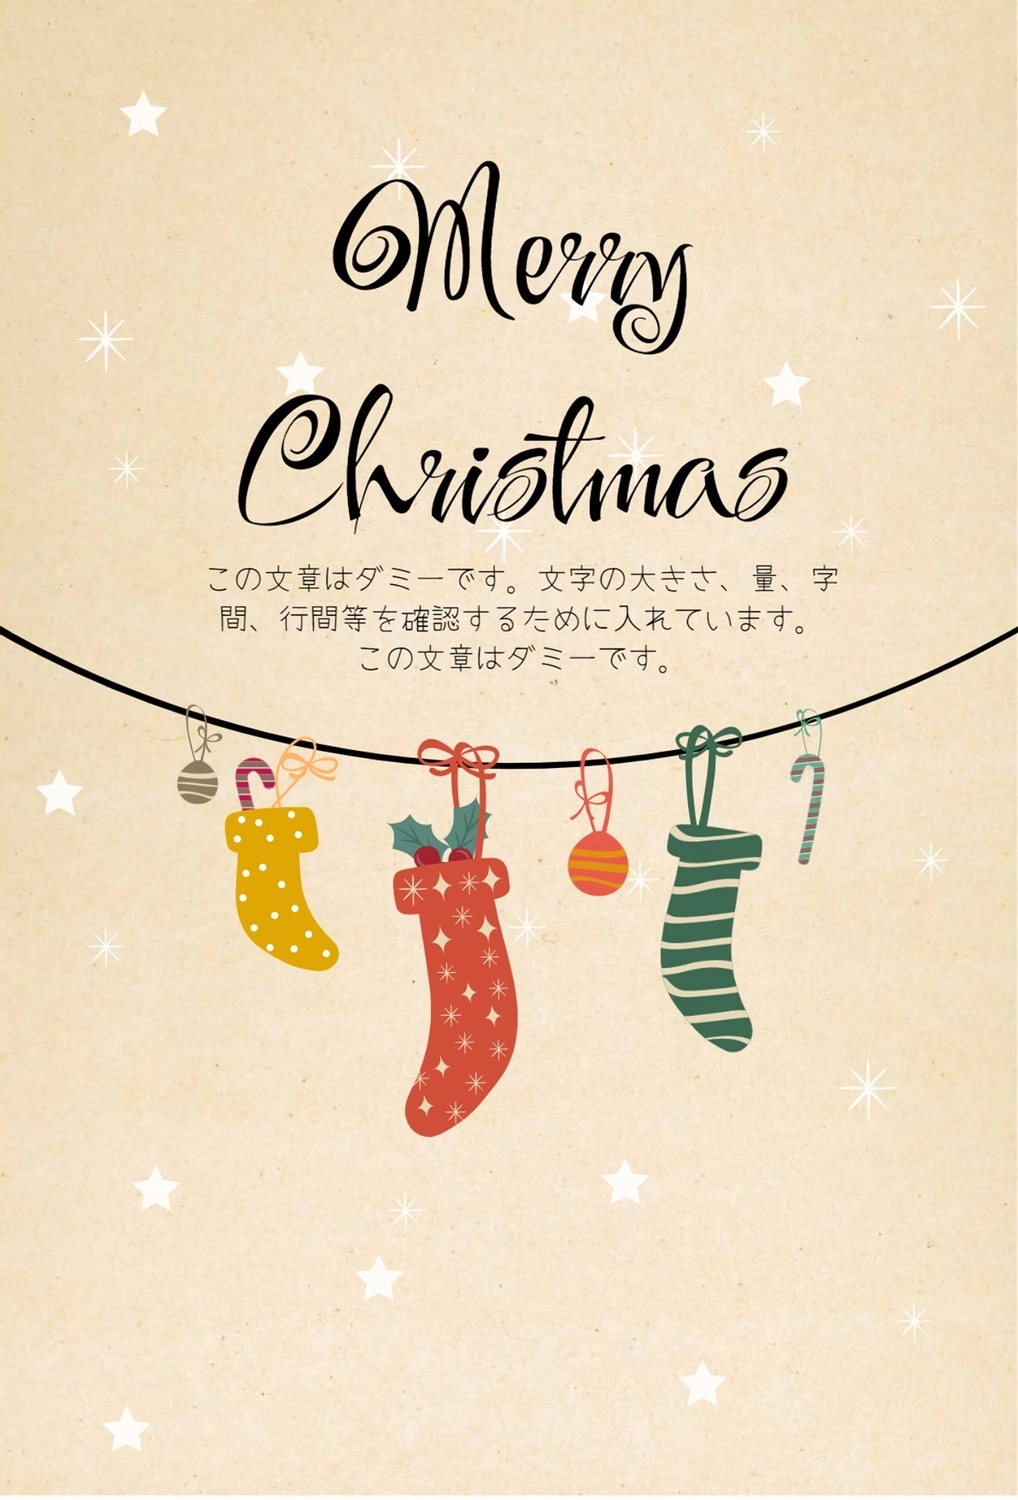 クリスマスグリーティングカード　靴下, 横書き, 作成, デザイン, メッセージカードテンプレート